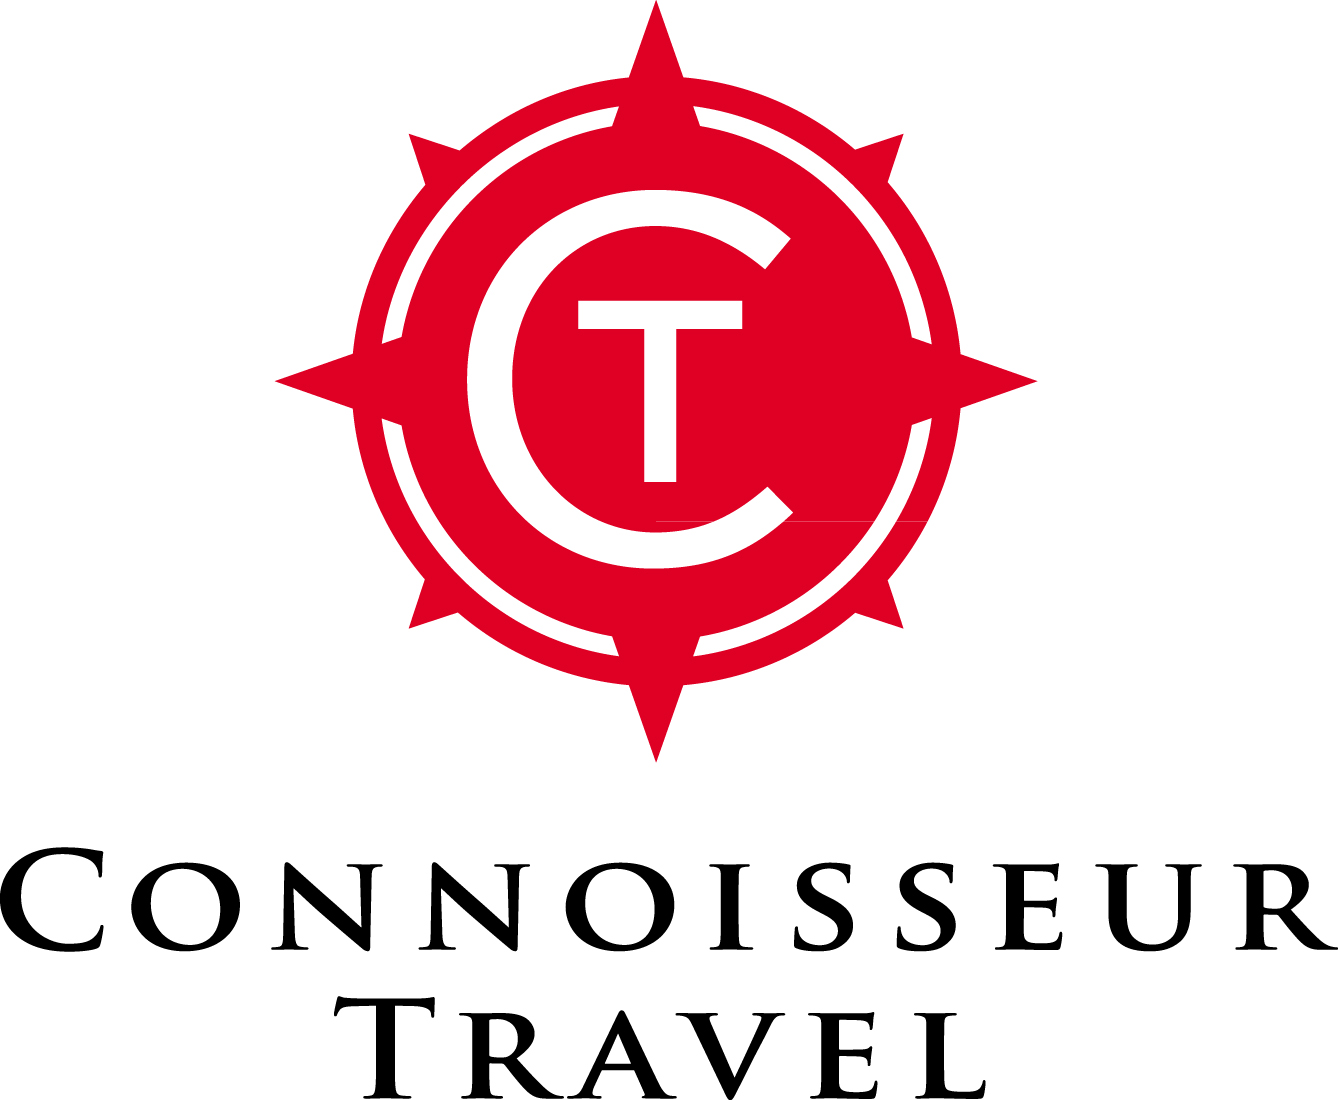 connoisseur travel collection ltd